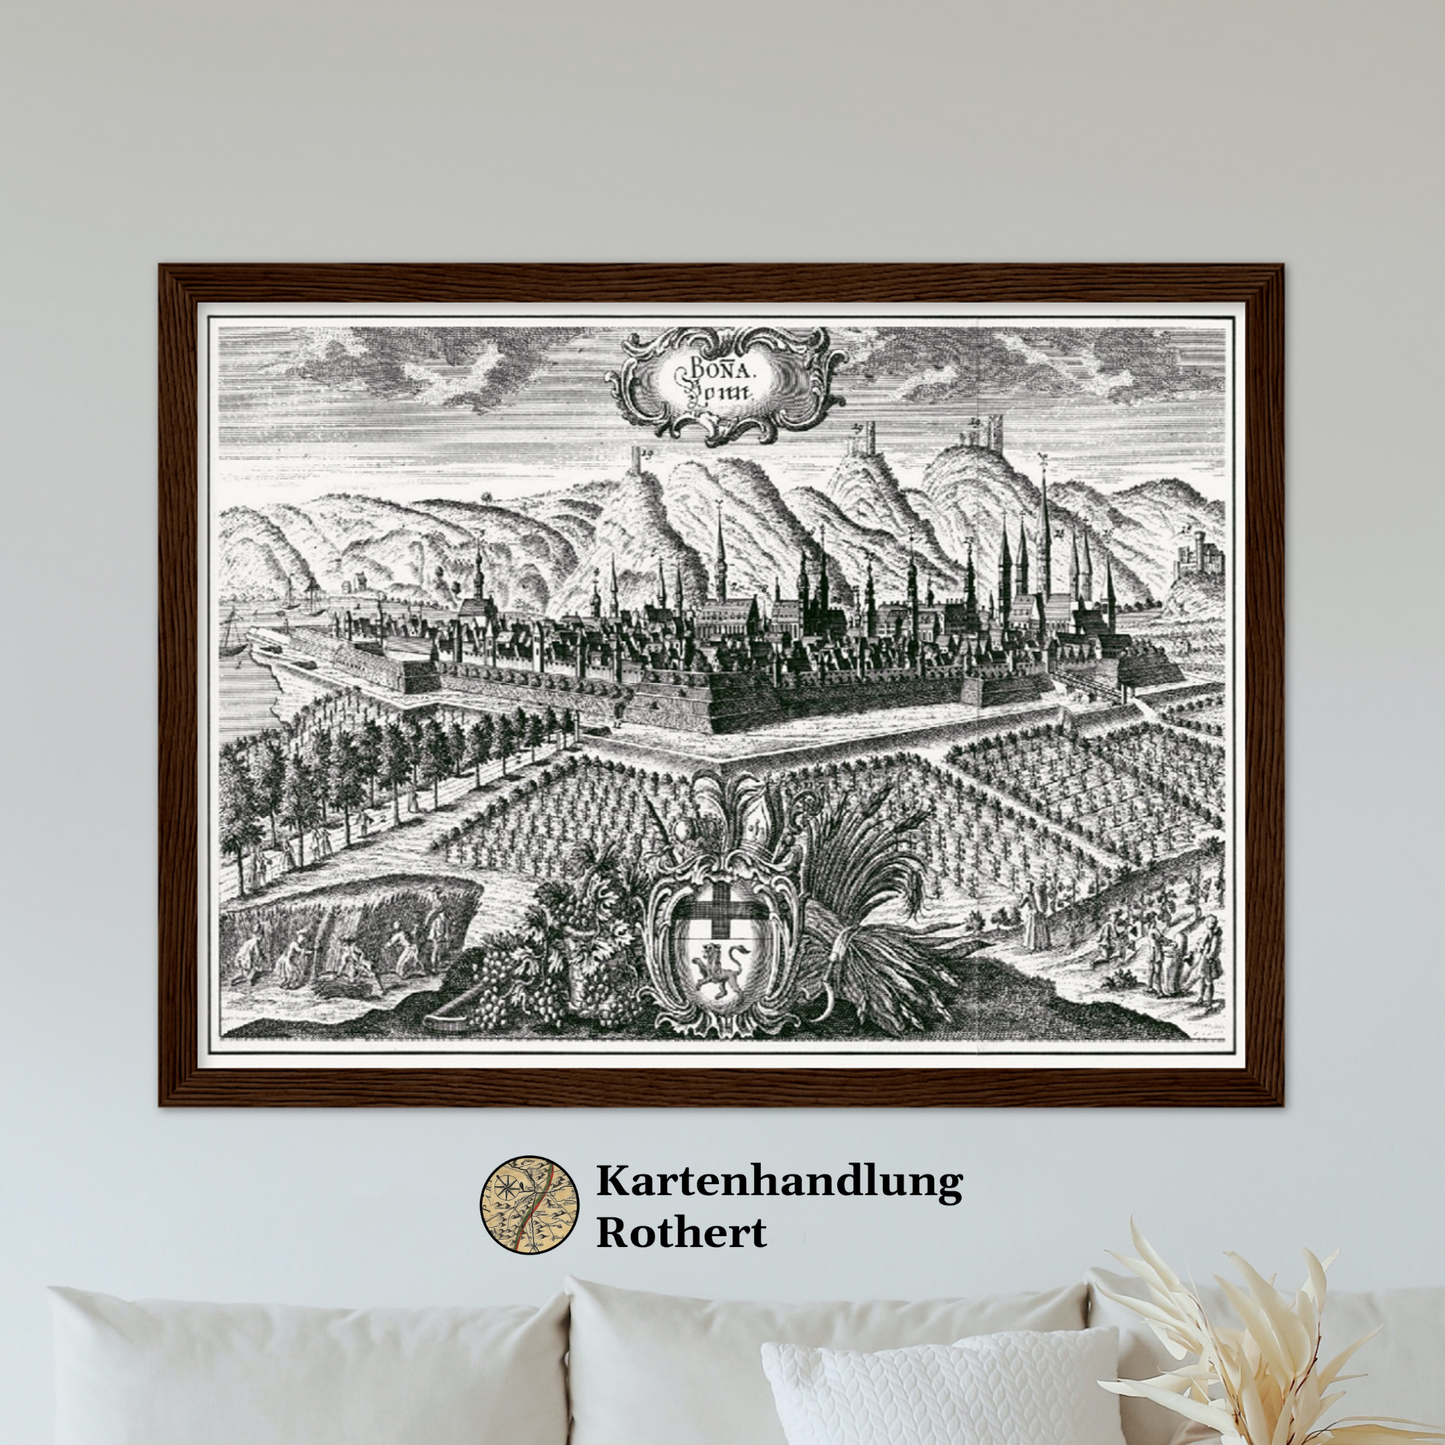 Historische Stadtansicht Bonn um 1700